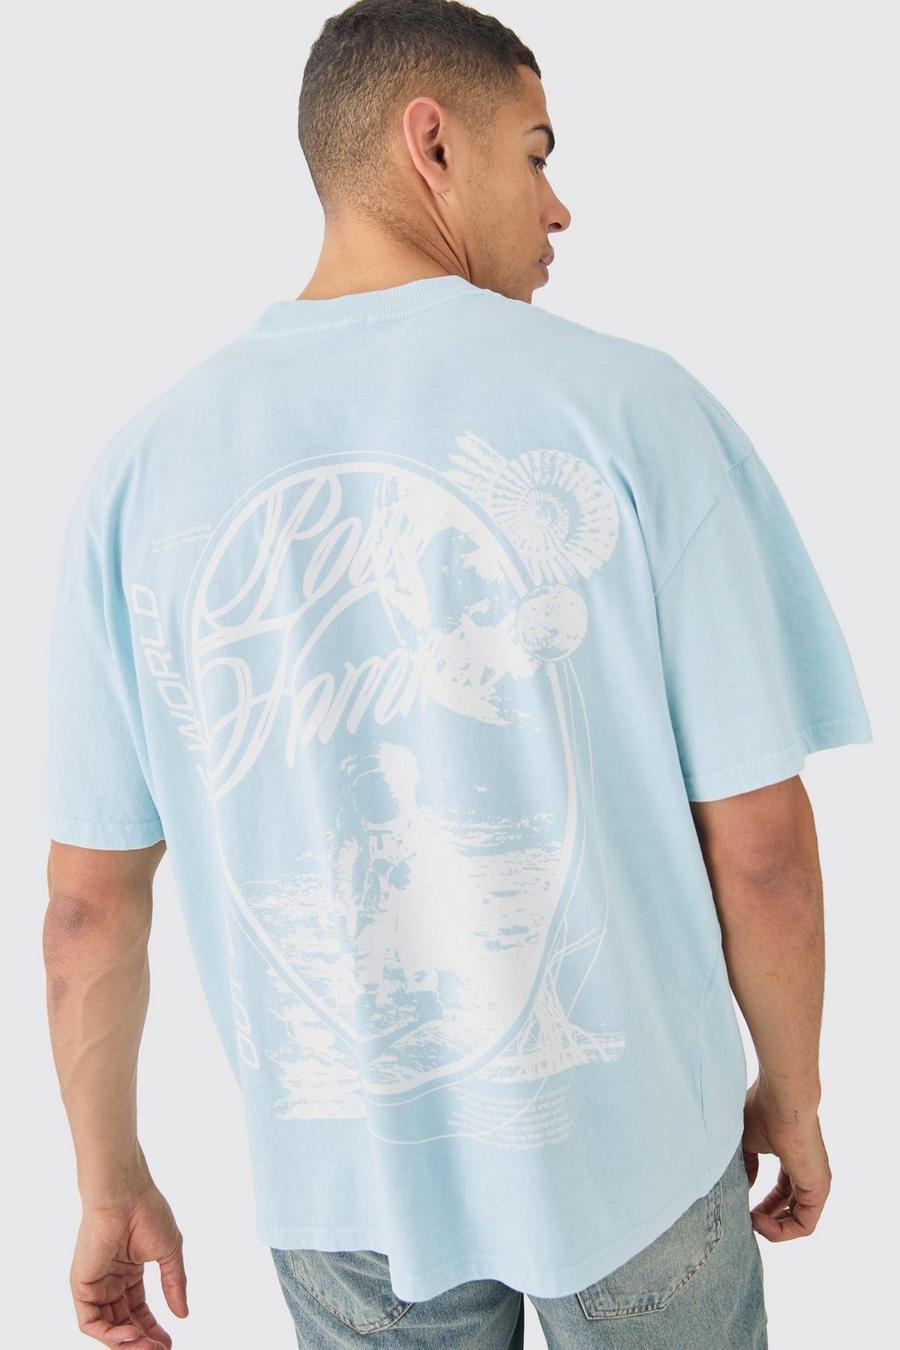 T-shirt oversize slavata Pour Homme Space, Light blue